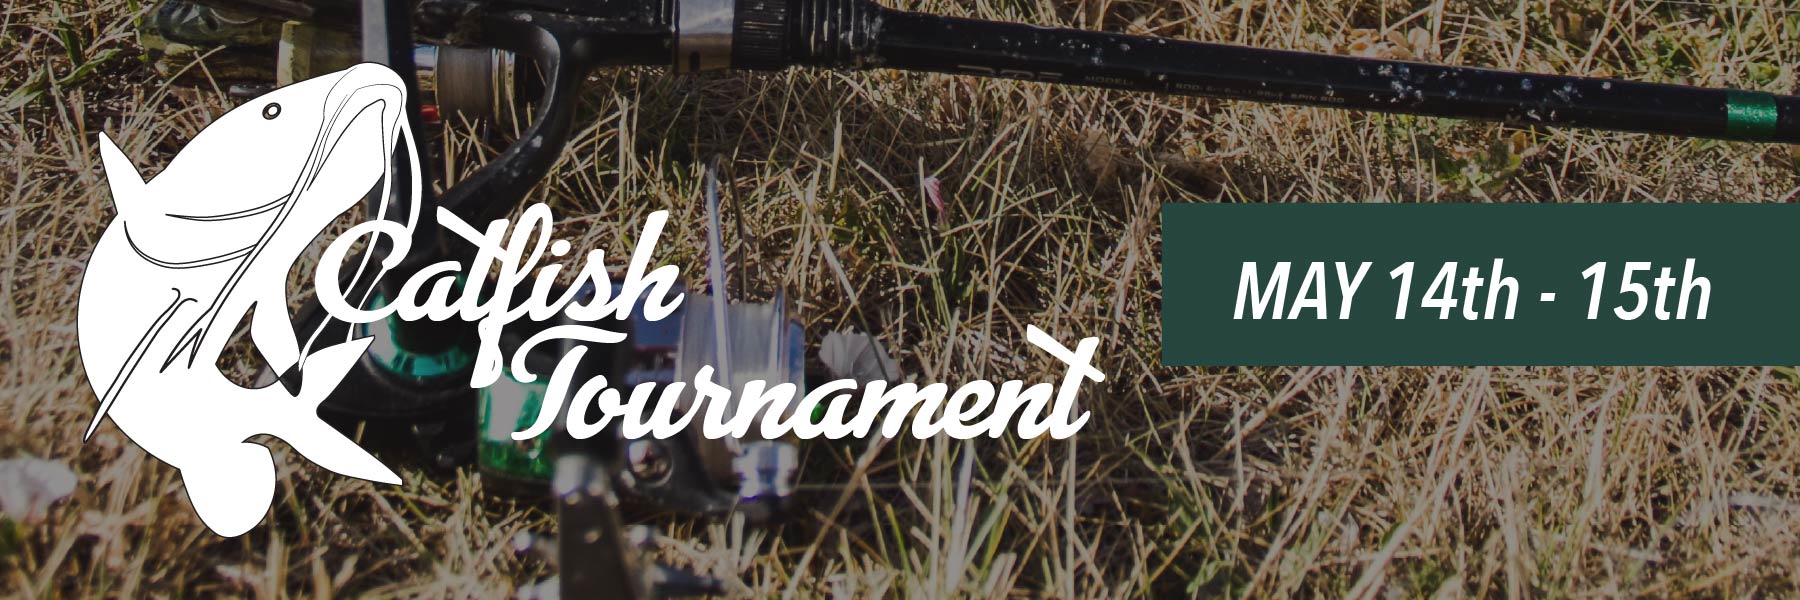 catfish tournament banner